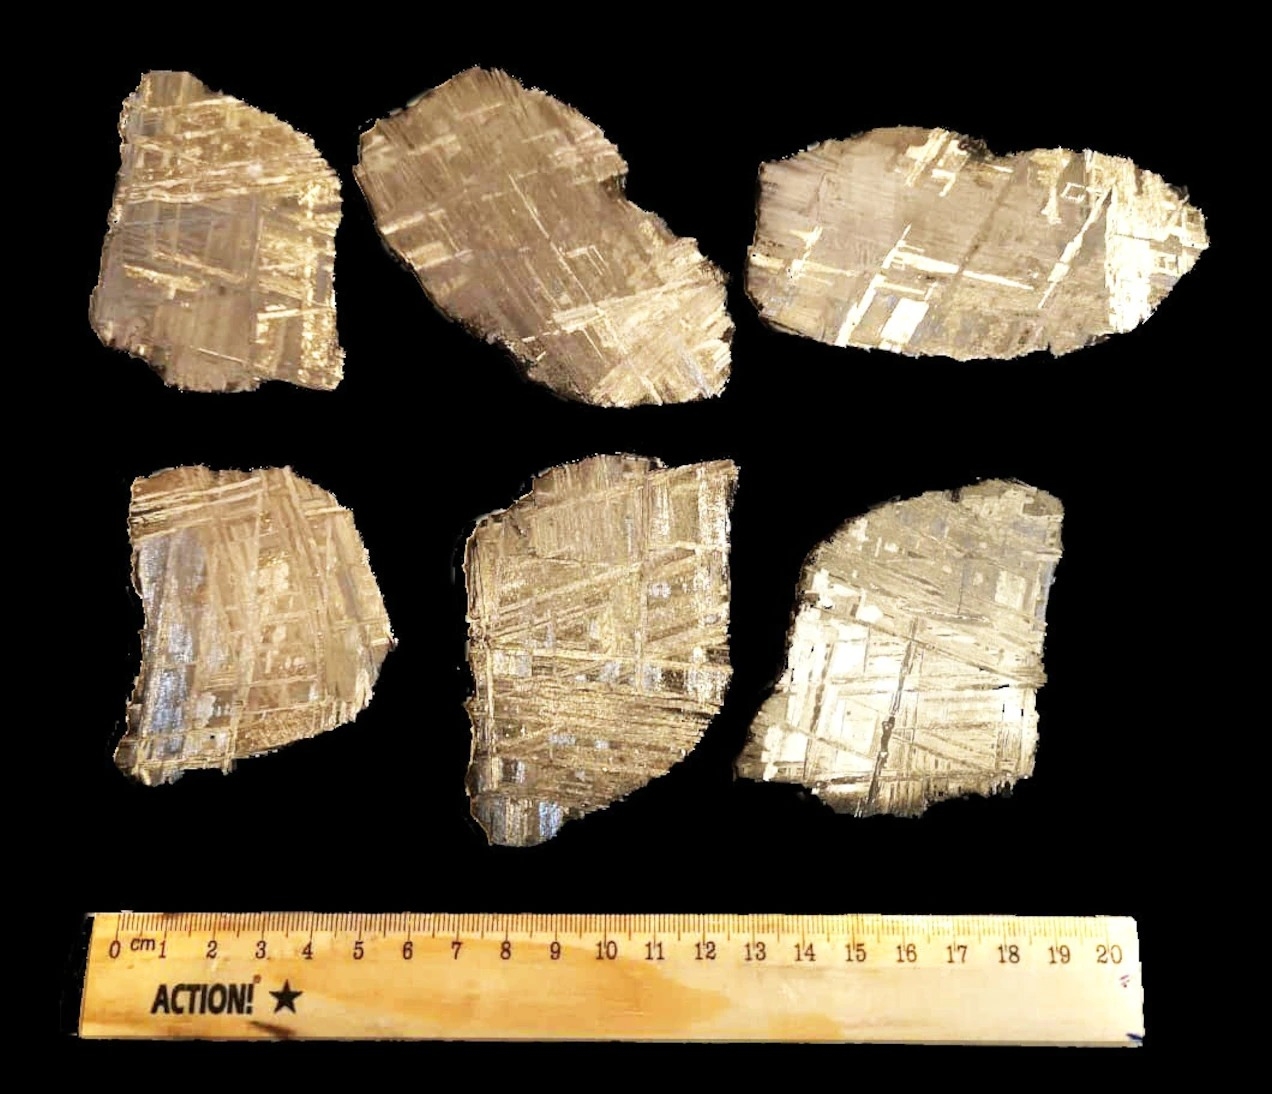 在這些埃爾阿里隕石的切片中，可以看到的鐵隕石常見的編織狀晶體圖案。但這顆隕石還帶來另外的驚喜：在地球自然界從未見過的三種新礦物。ABDULKADIR ABIIKAR HUSSEIN, ALMAAS UNIVERSITY